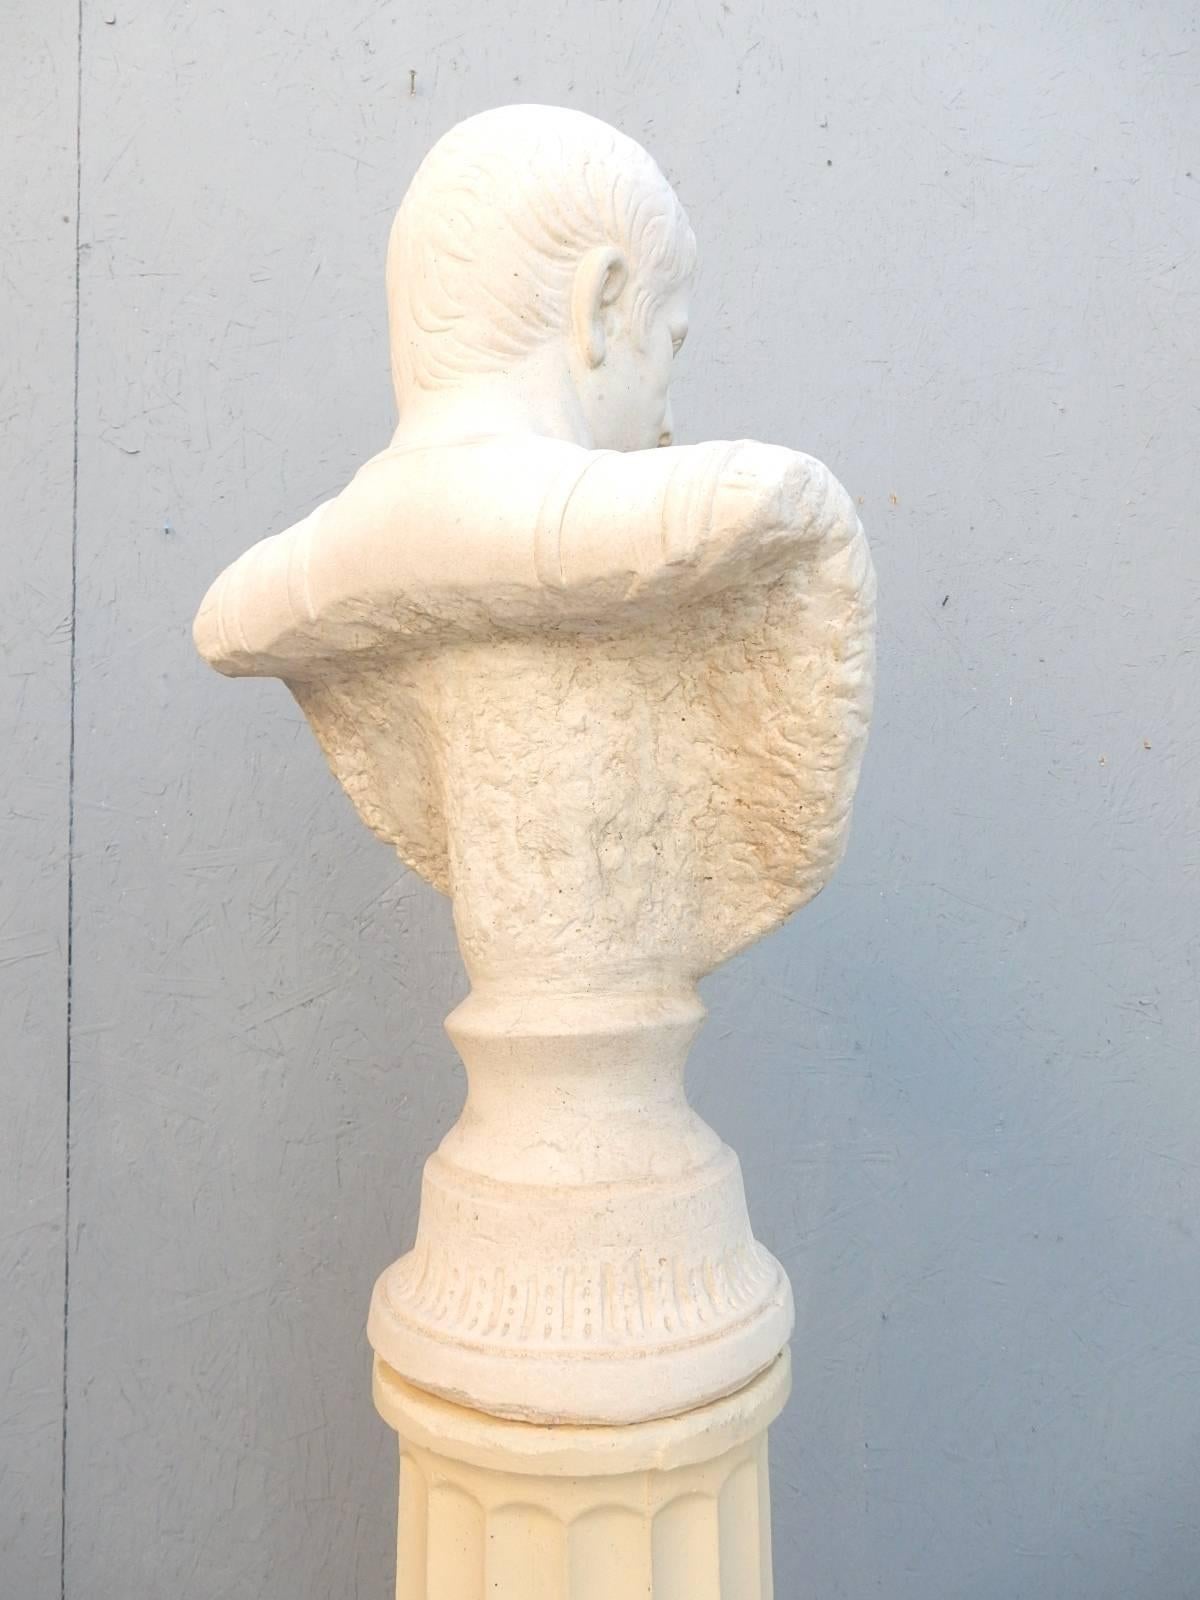 bust of julius caesar